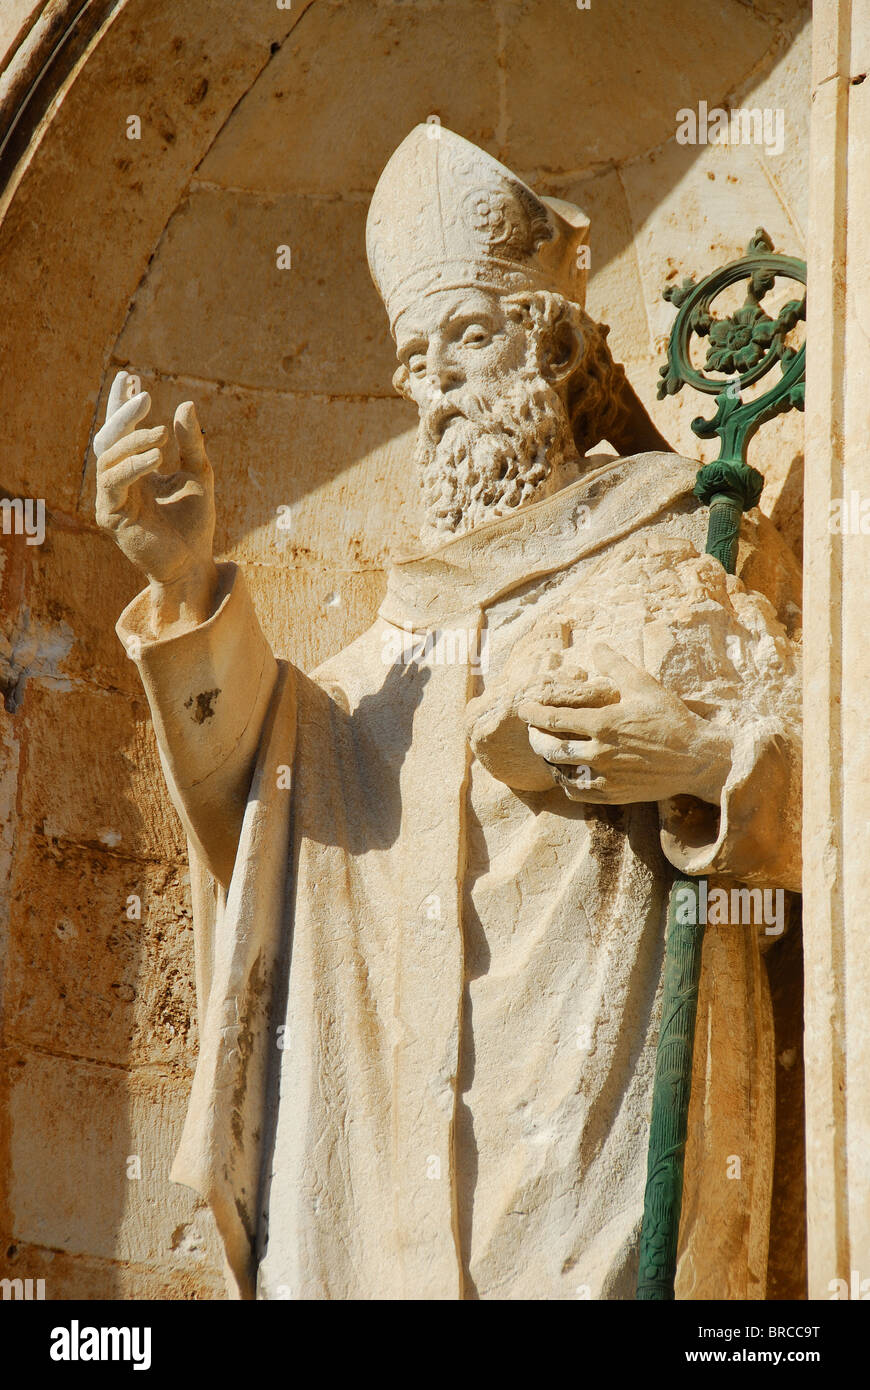 DUBROVNIK, Croatie. Une statue de St Blaise, saint patron de Dubrovnik, à l'entrée de la cathédrale de Dubrovnik dans la vieille ville. Banque D'Images